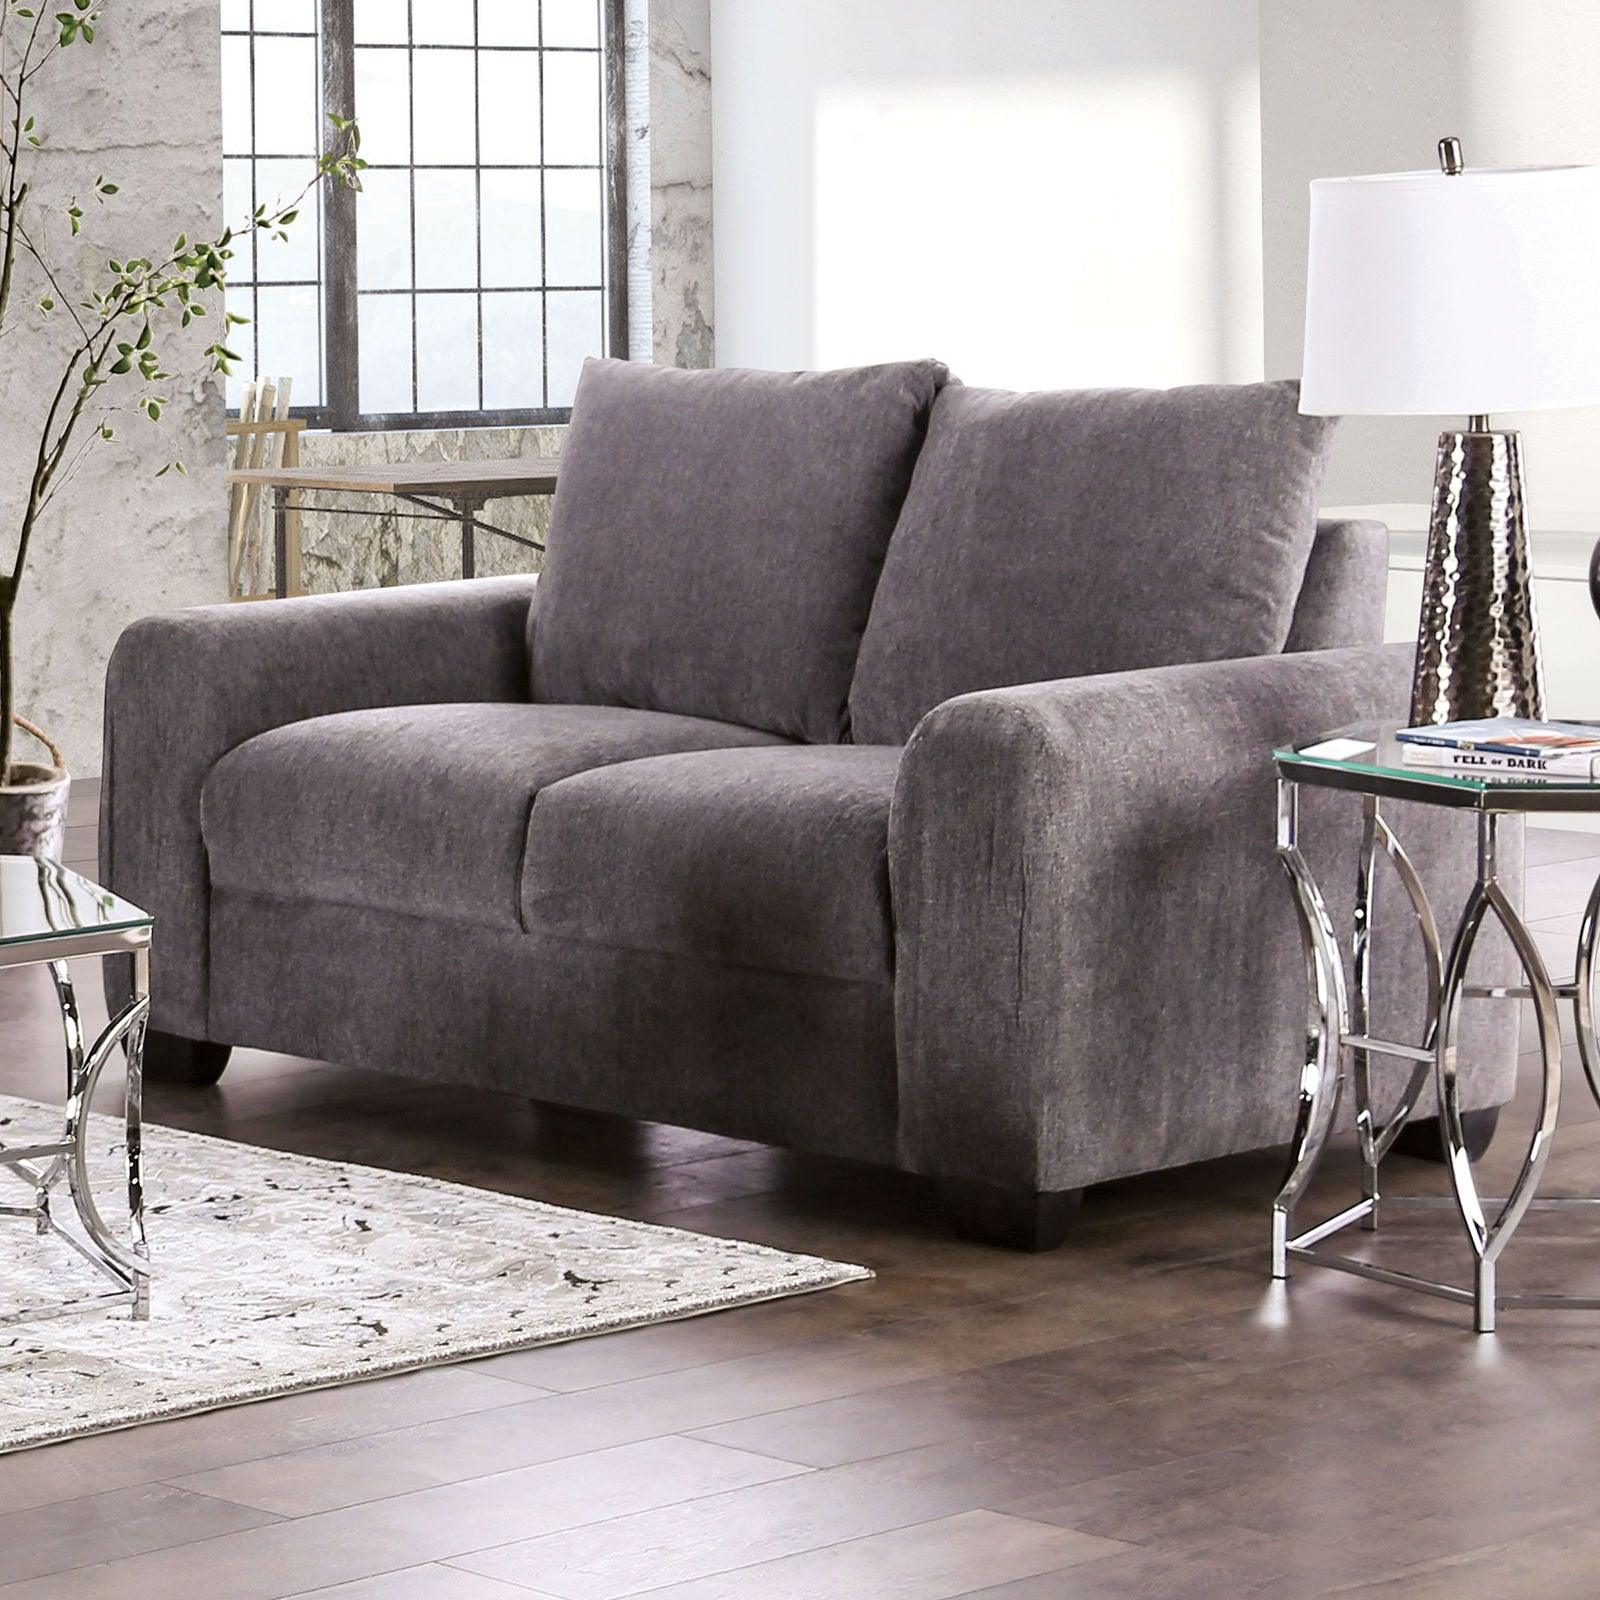 Furniture of America - Dagmar - Loveseat - Gray - 5th Avenue Furniture